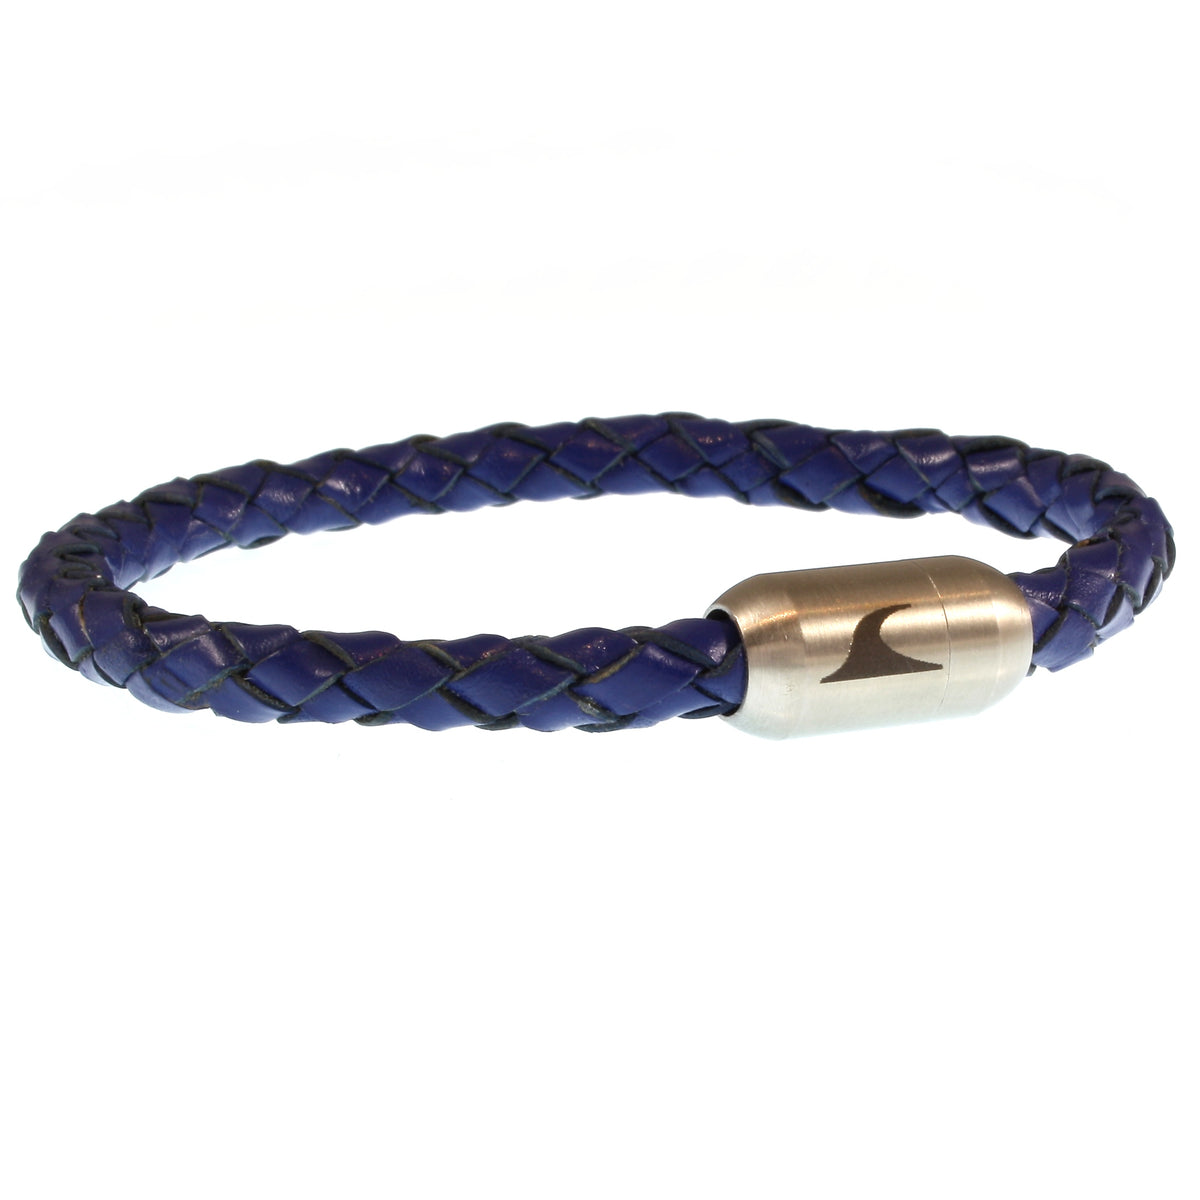 Herren-leder-armband-damen-sylt-blau-silber-geflochten-Edelstahlverschluss-vorn-wavepirate-shop-f